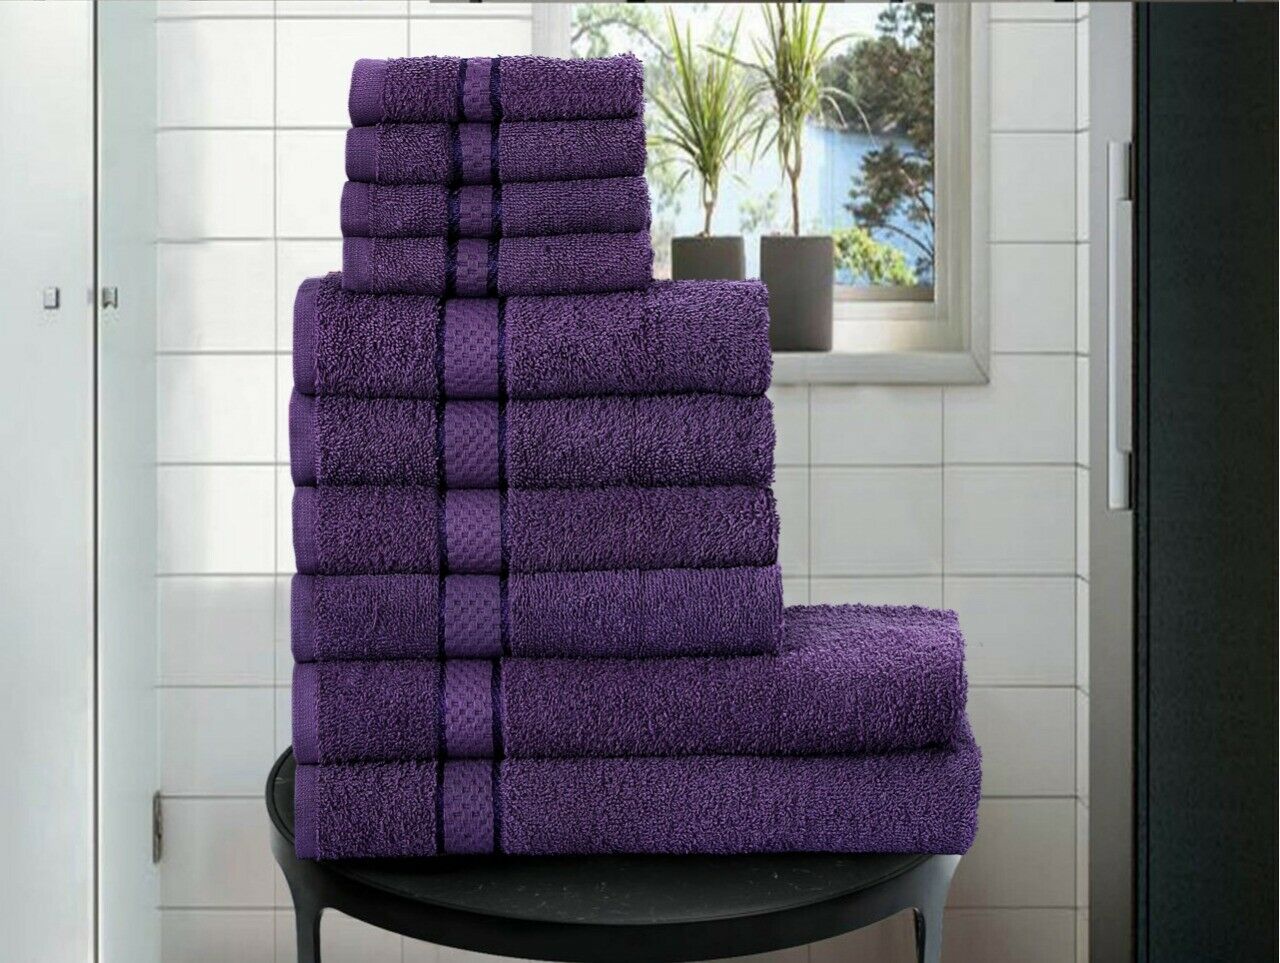 10 PCS TOWEL BALE SET 100% COMBED COTTON SOFT FACE HAND BATH BATHROOM TOWELS